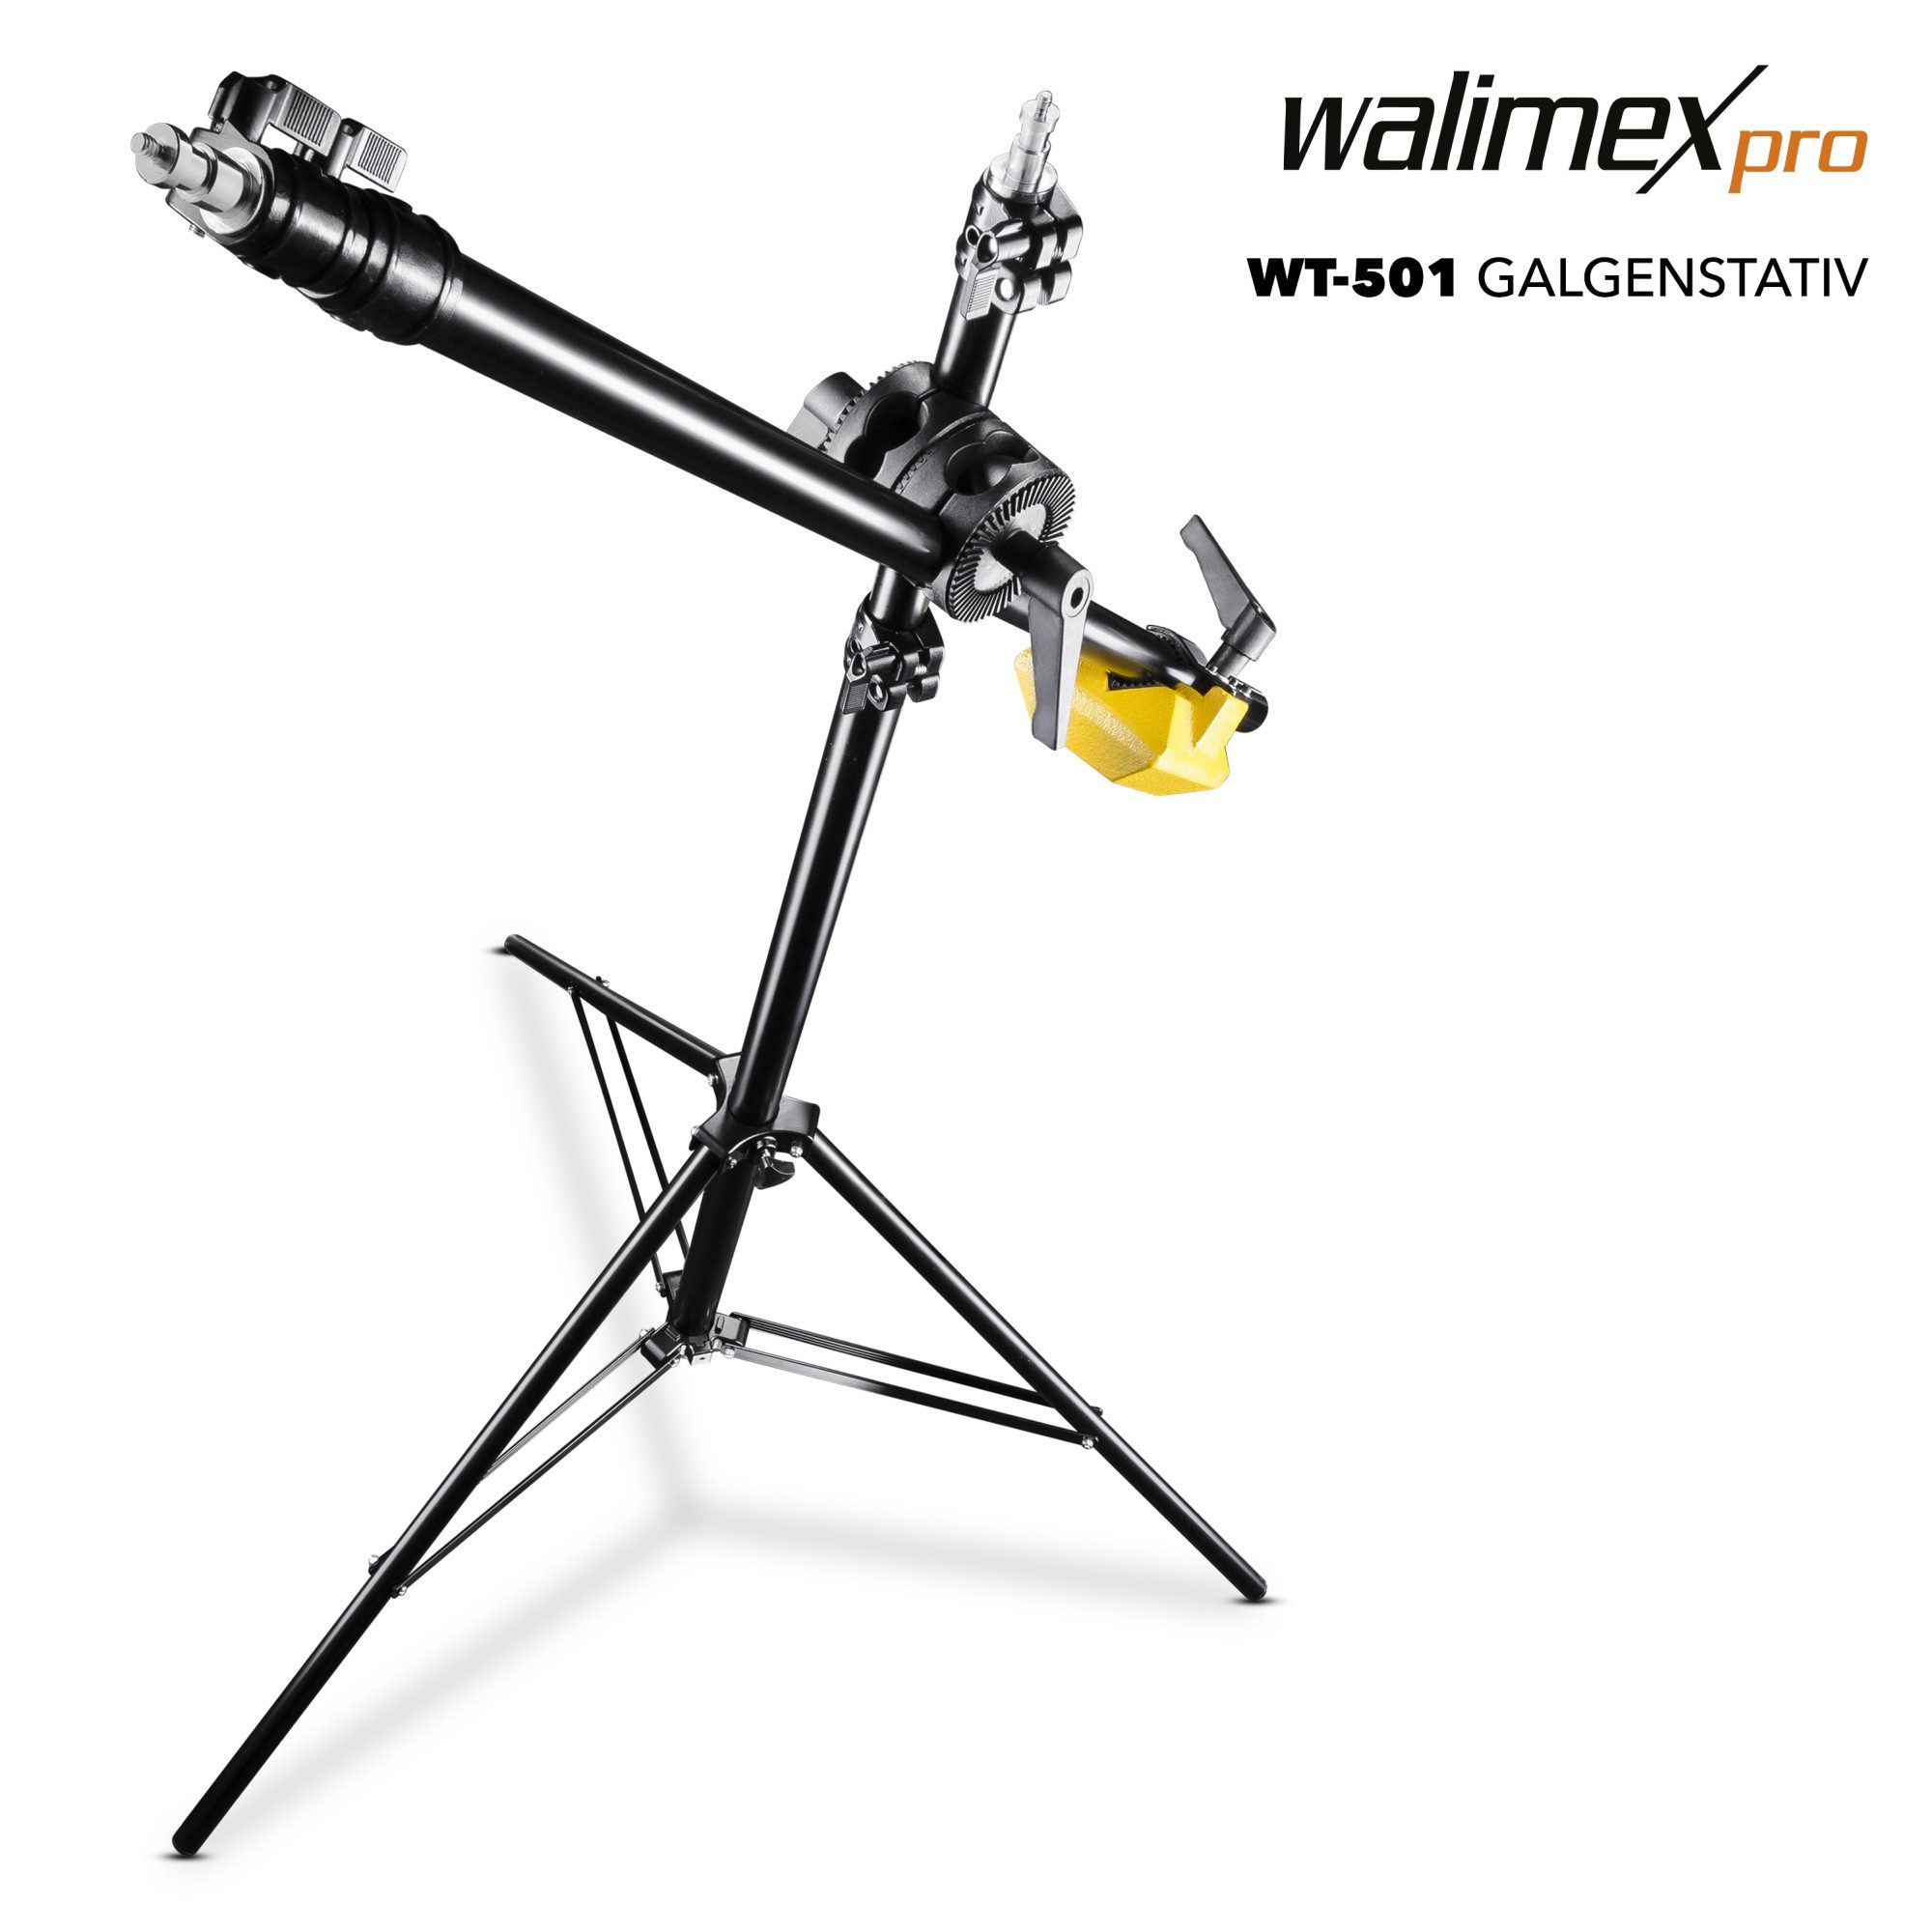 Walimex Pro Galgenstativ WT-501 100-410cm 3-5kg Galgenstativ